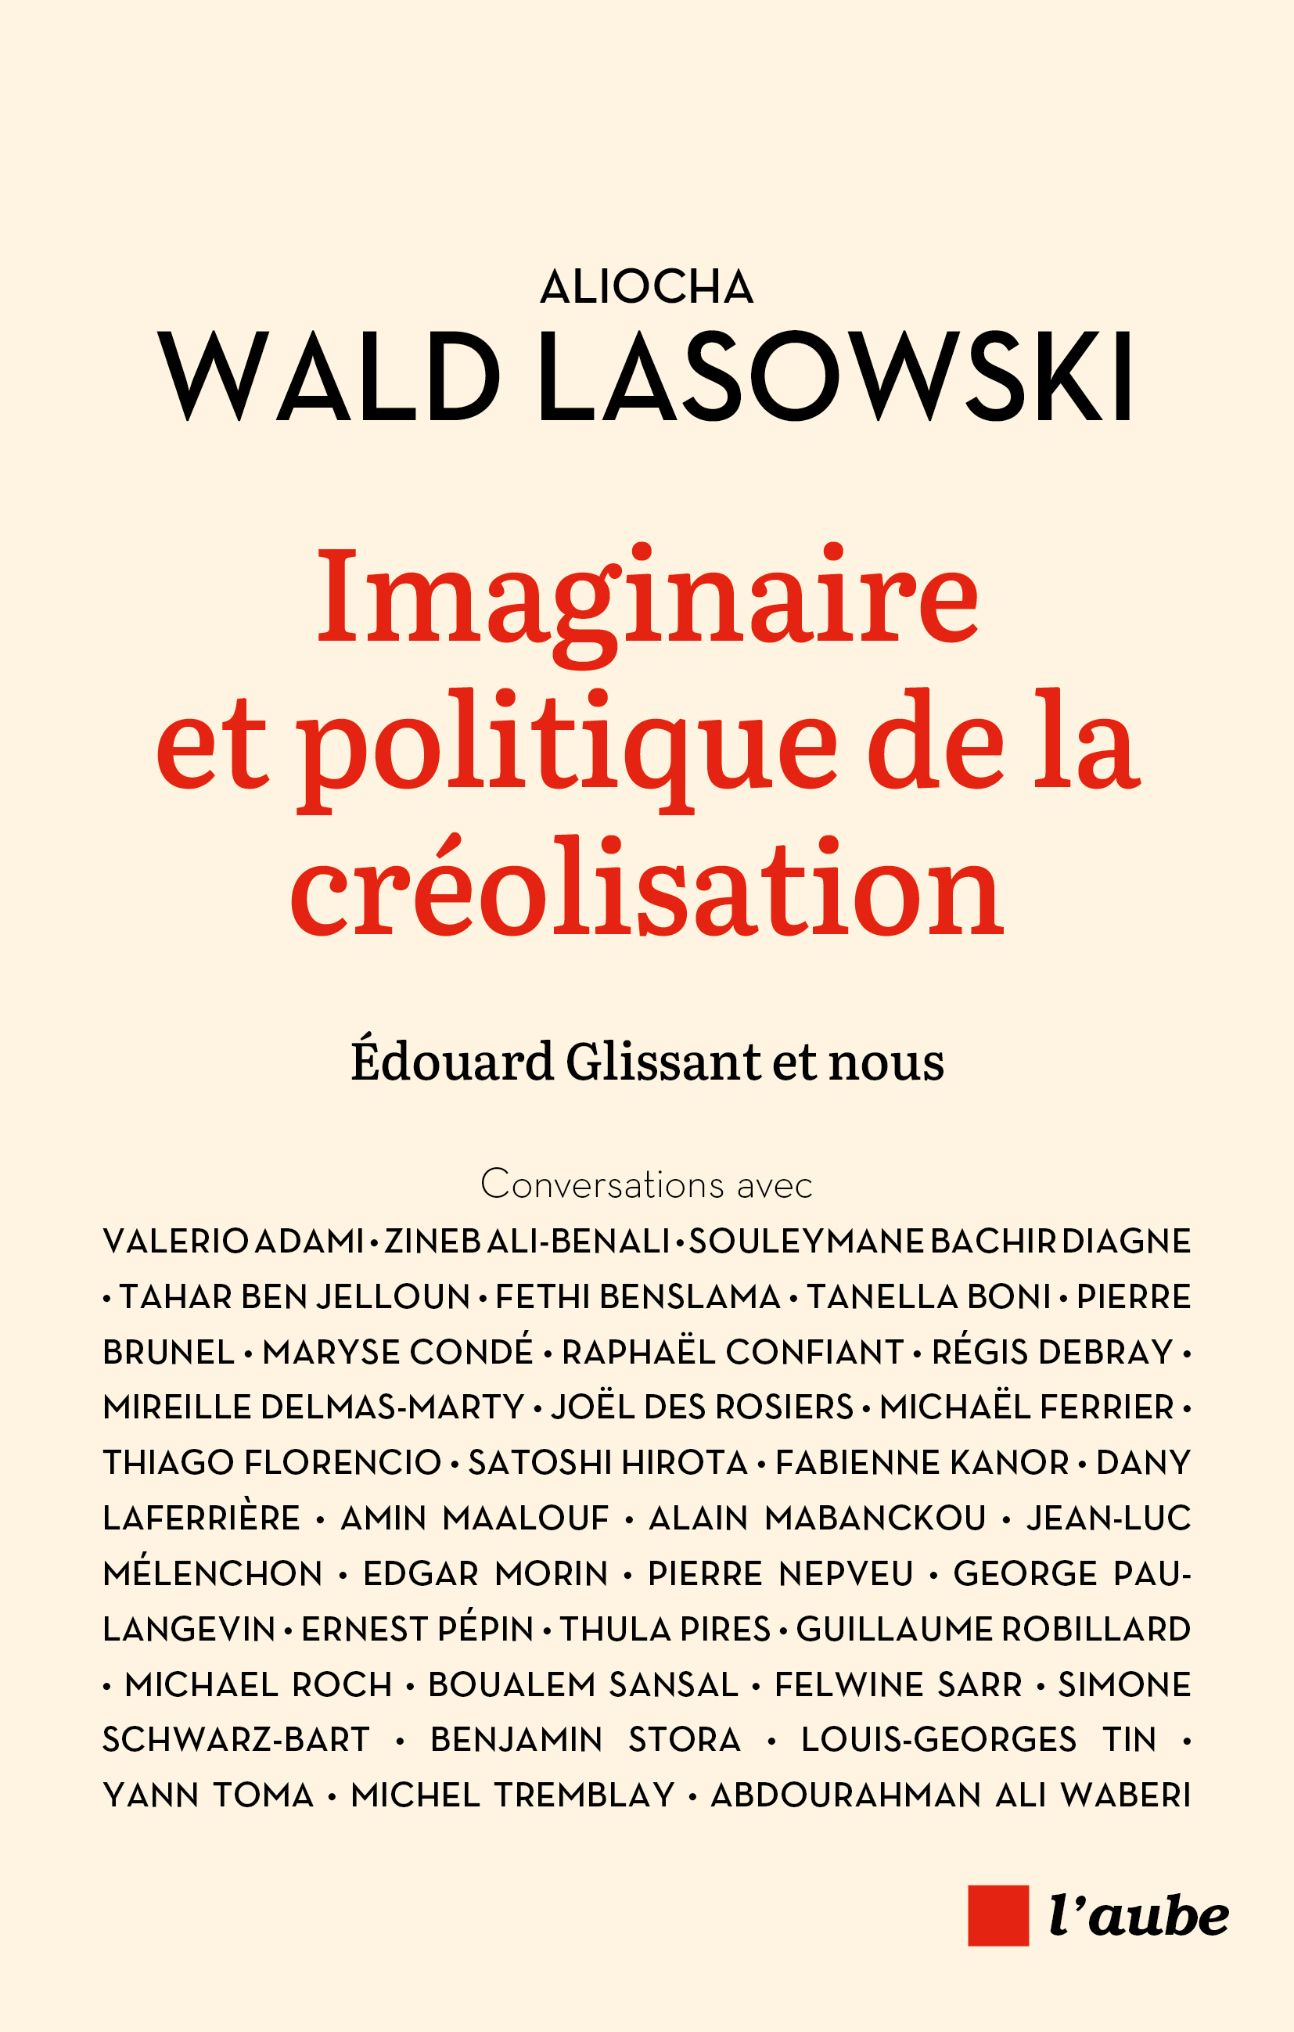 Aliocha Wald Lasowski, Imaginaire et politique de la créolisation. Édouard Glissant et nous